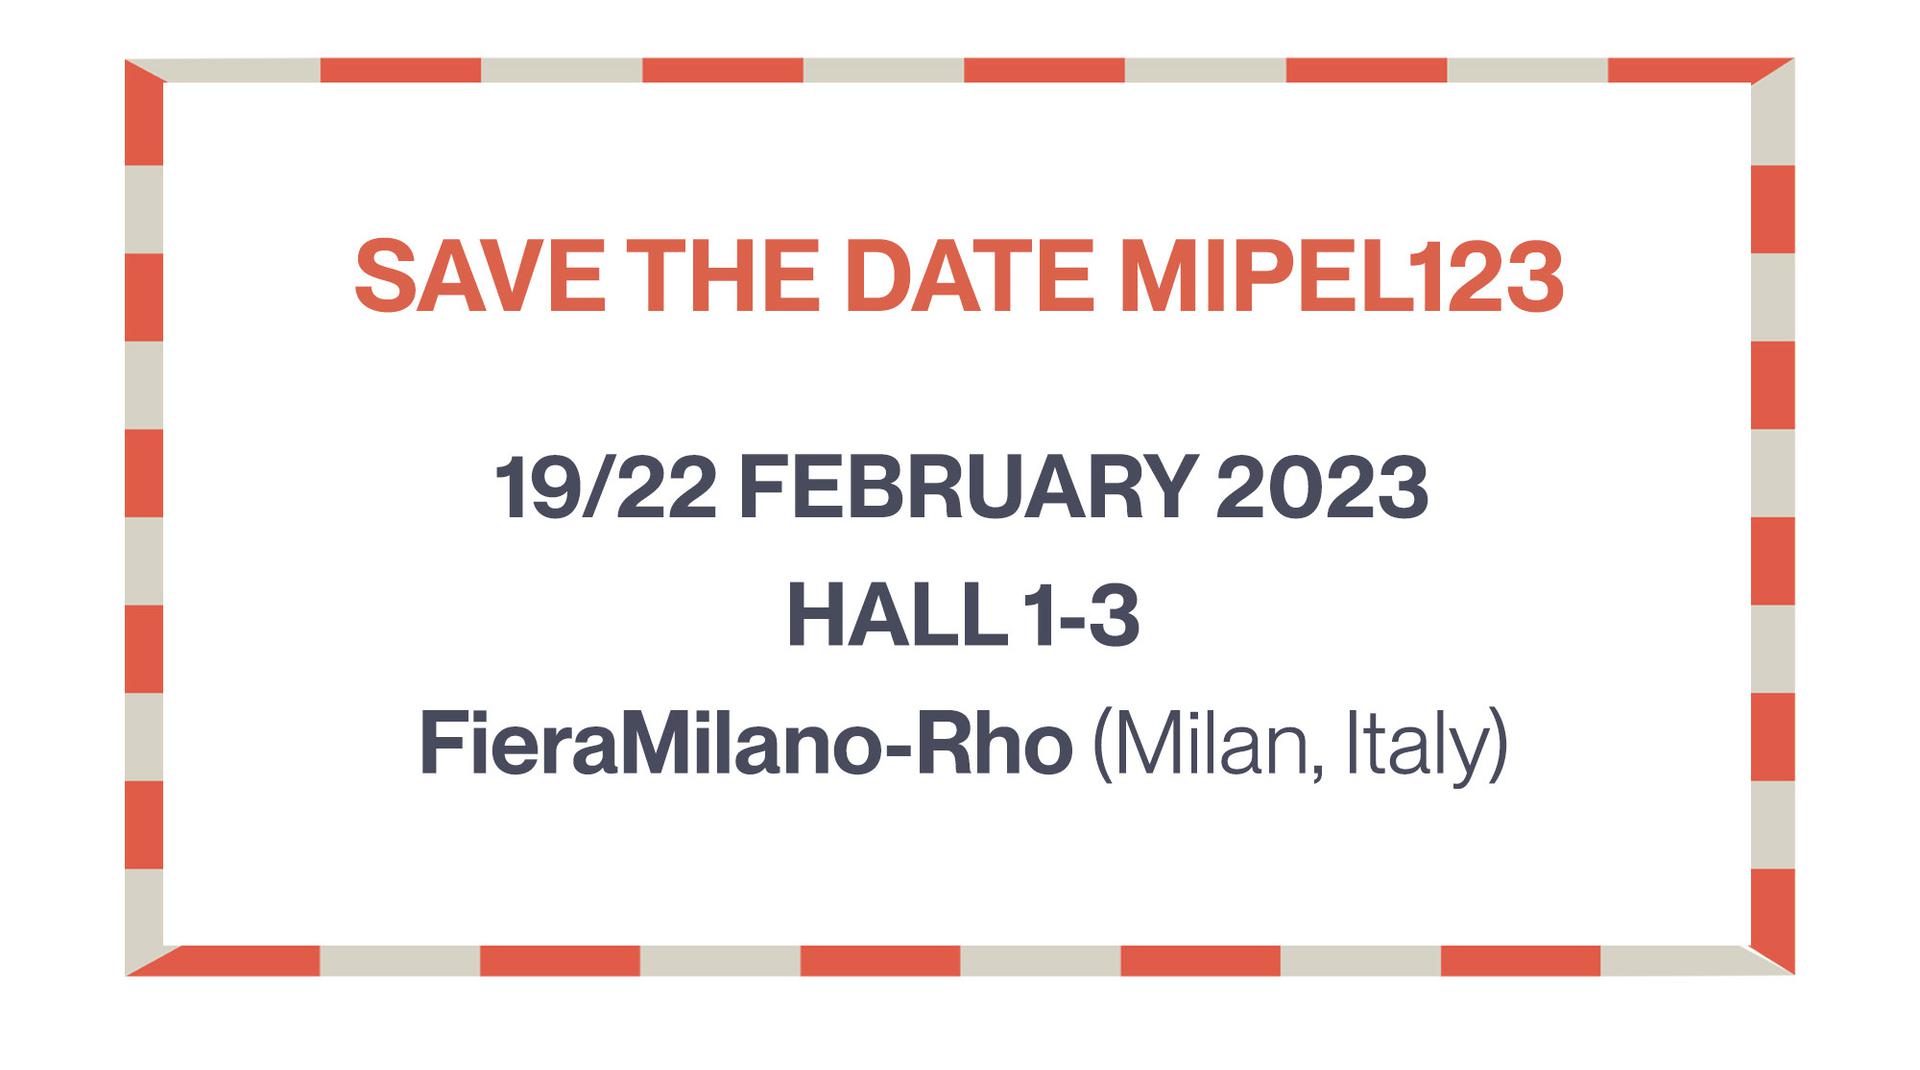 MIPEL123: 19/22 FEBRUARY 2023 - HALL 1-3  FieraMilano-Rho (Milan, Italy)